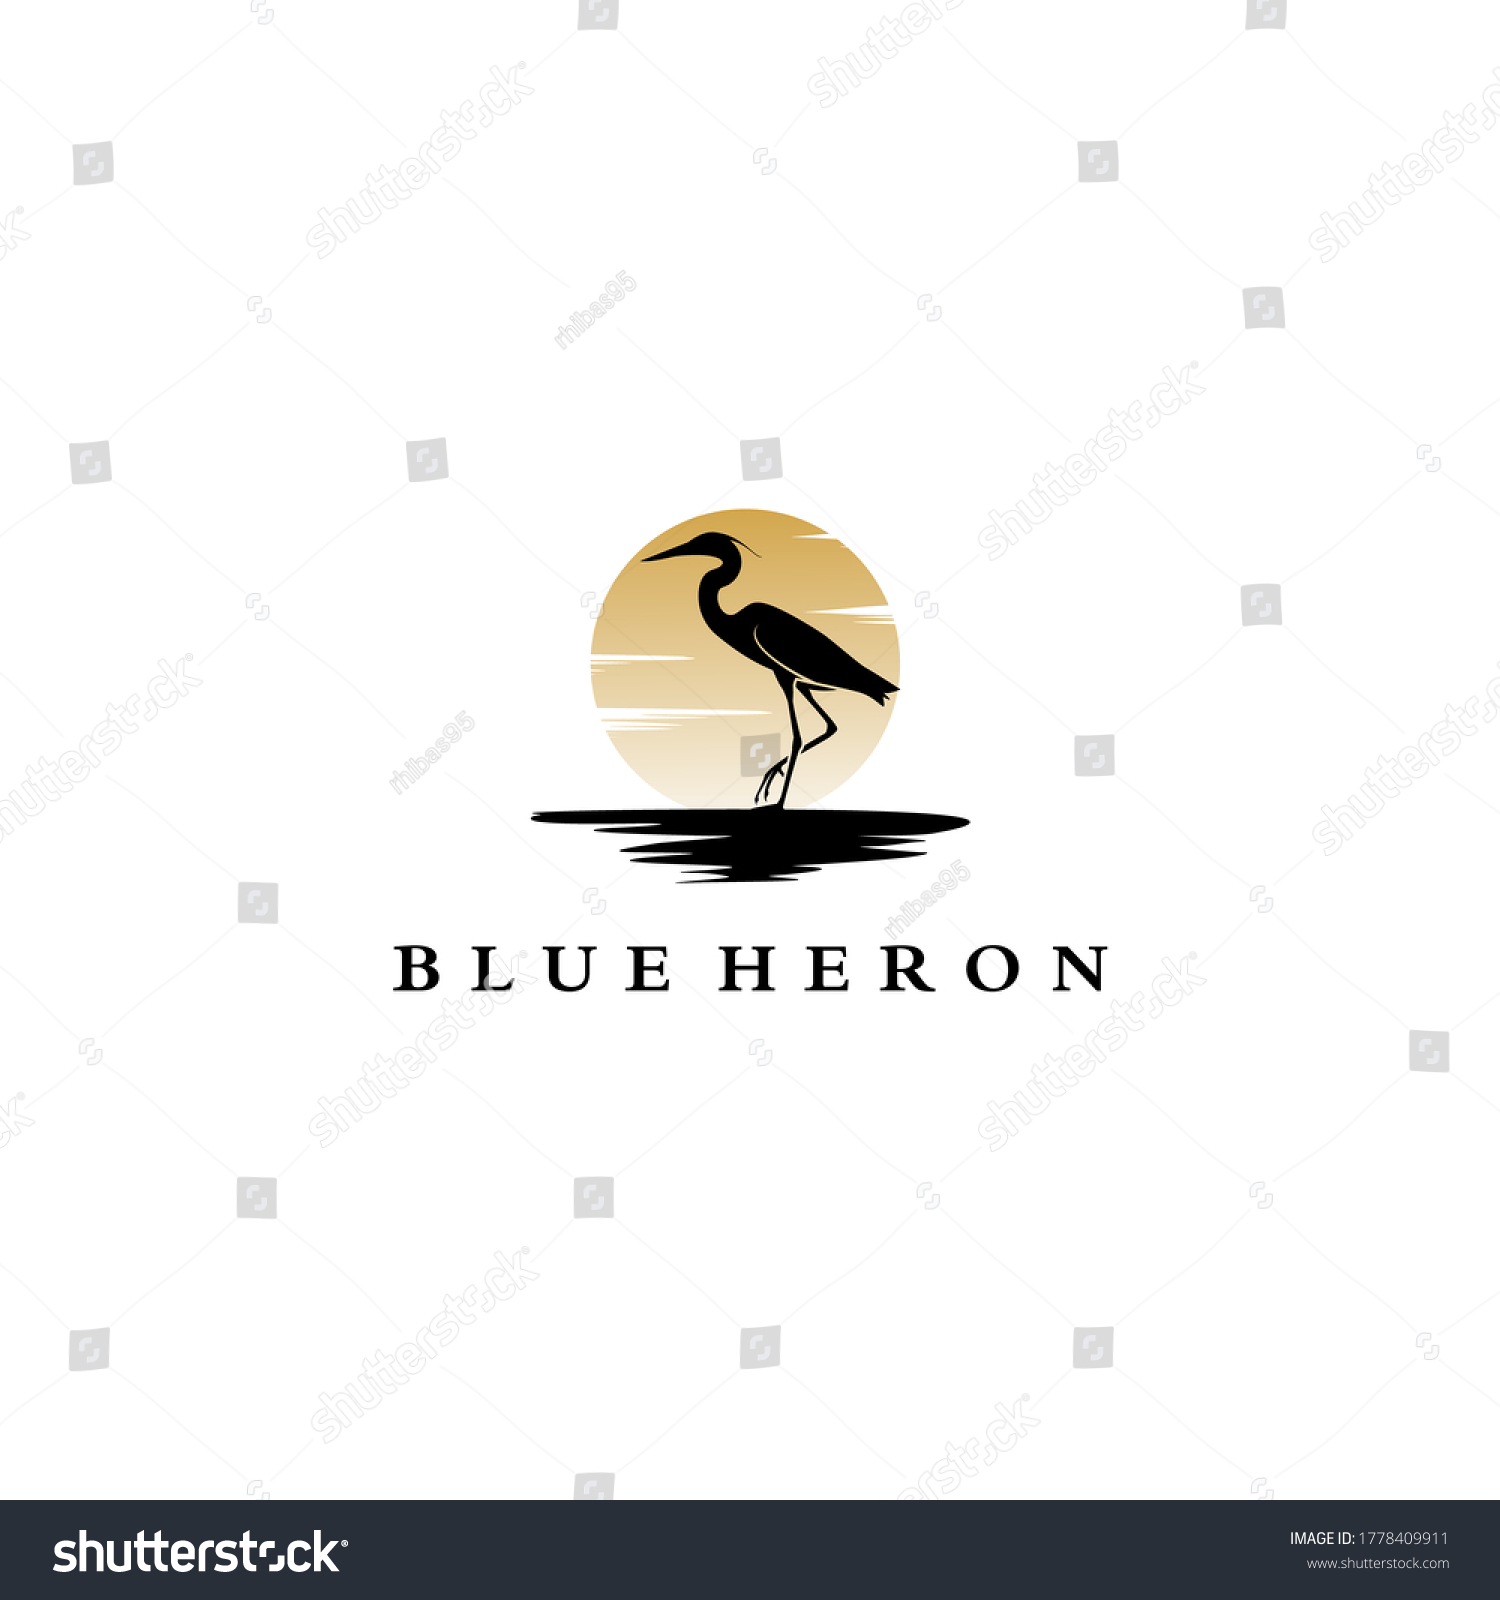 2,032 Blue heron vector Images, Stock Photos & Vectors | Shutterstock